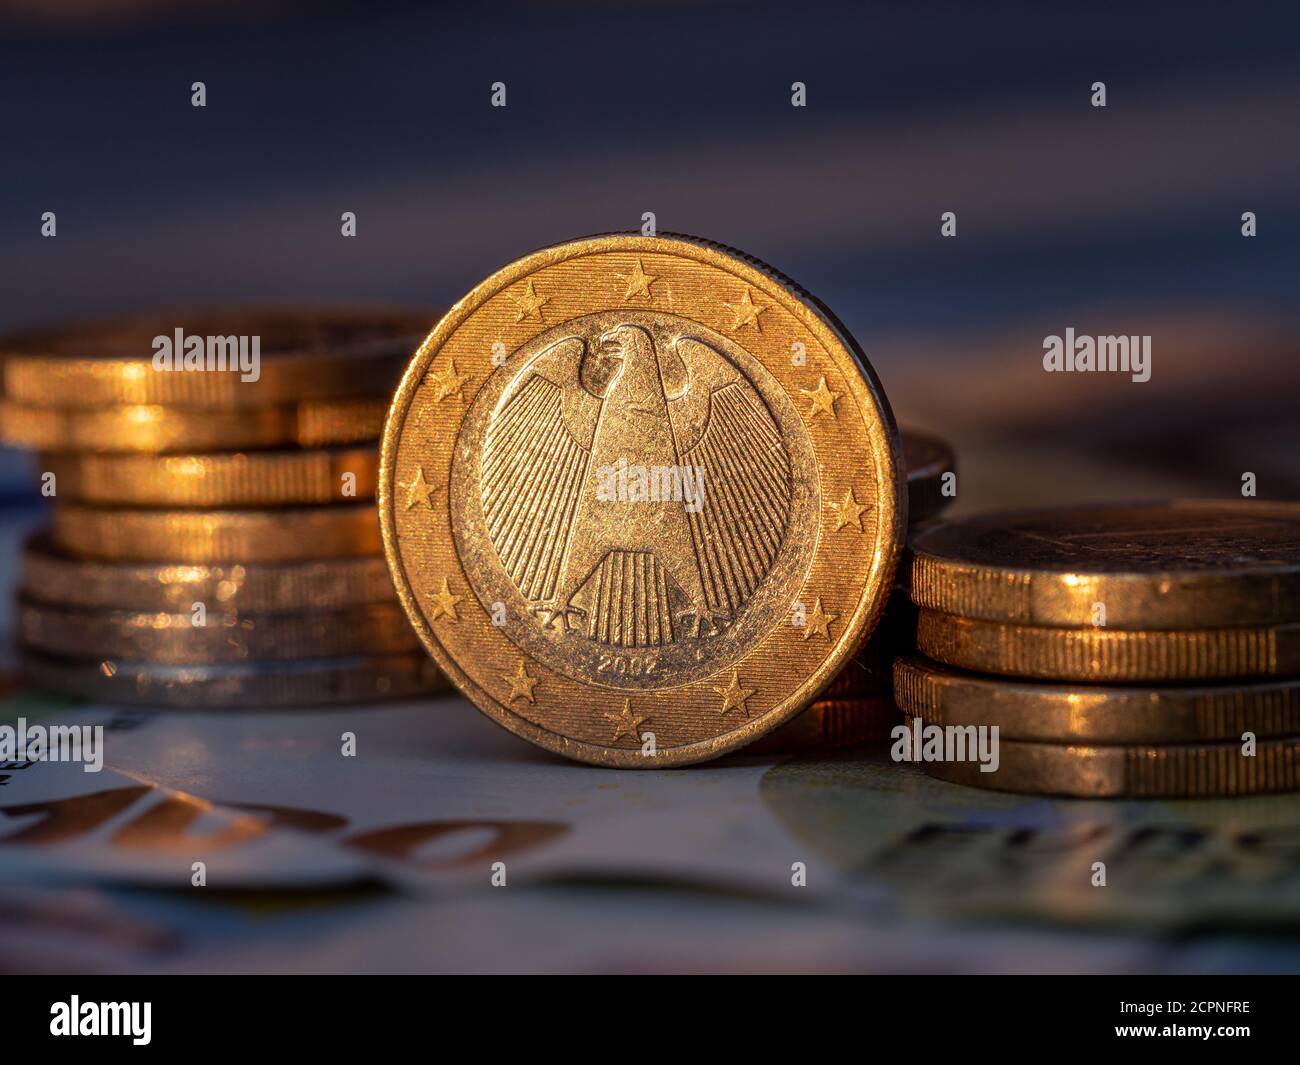 Gros plan sur une pièce de monnaie allemande d'un euro avec des piles de pièces de monnaie d'un centiret d'euro. Banque D'Images